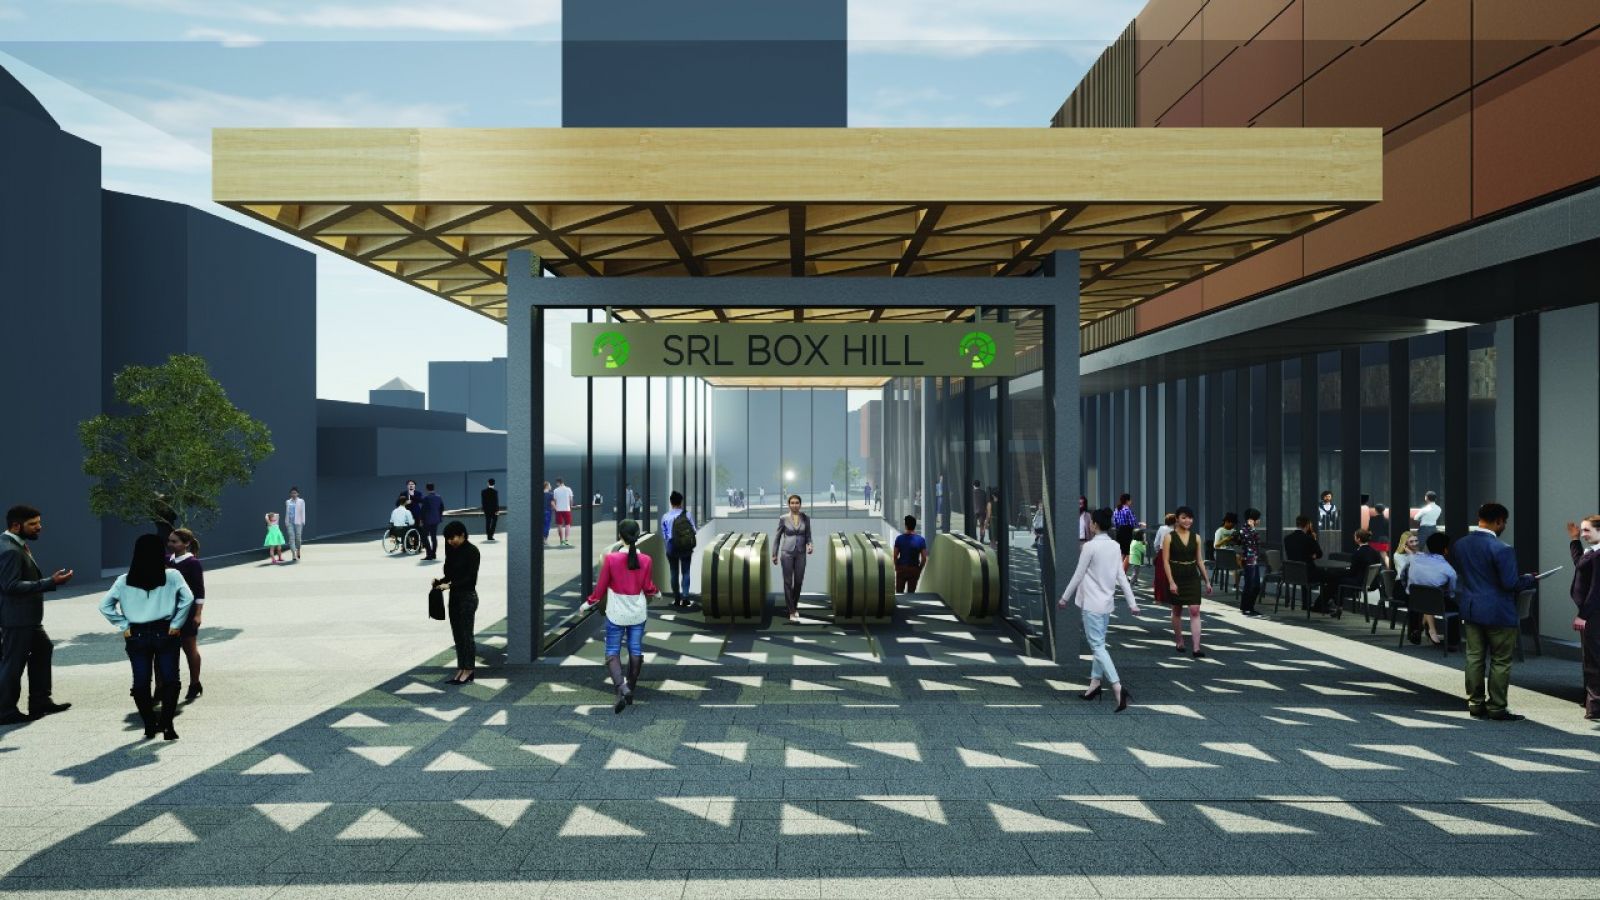 Concept design: Box Hill SRL Station entrance